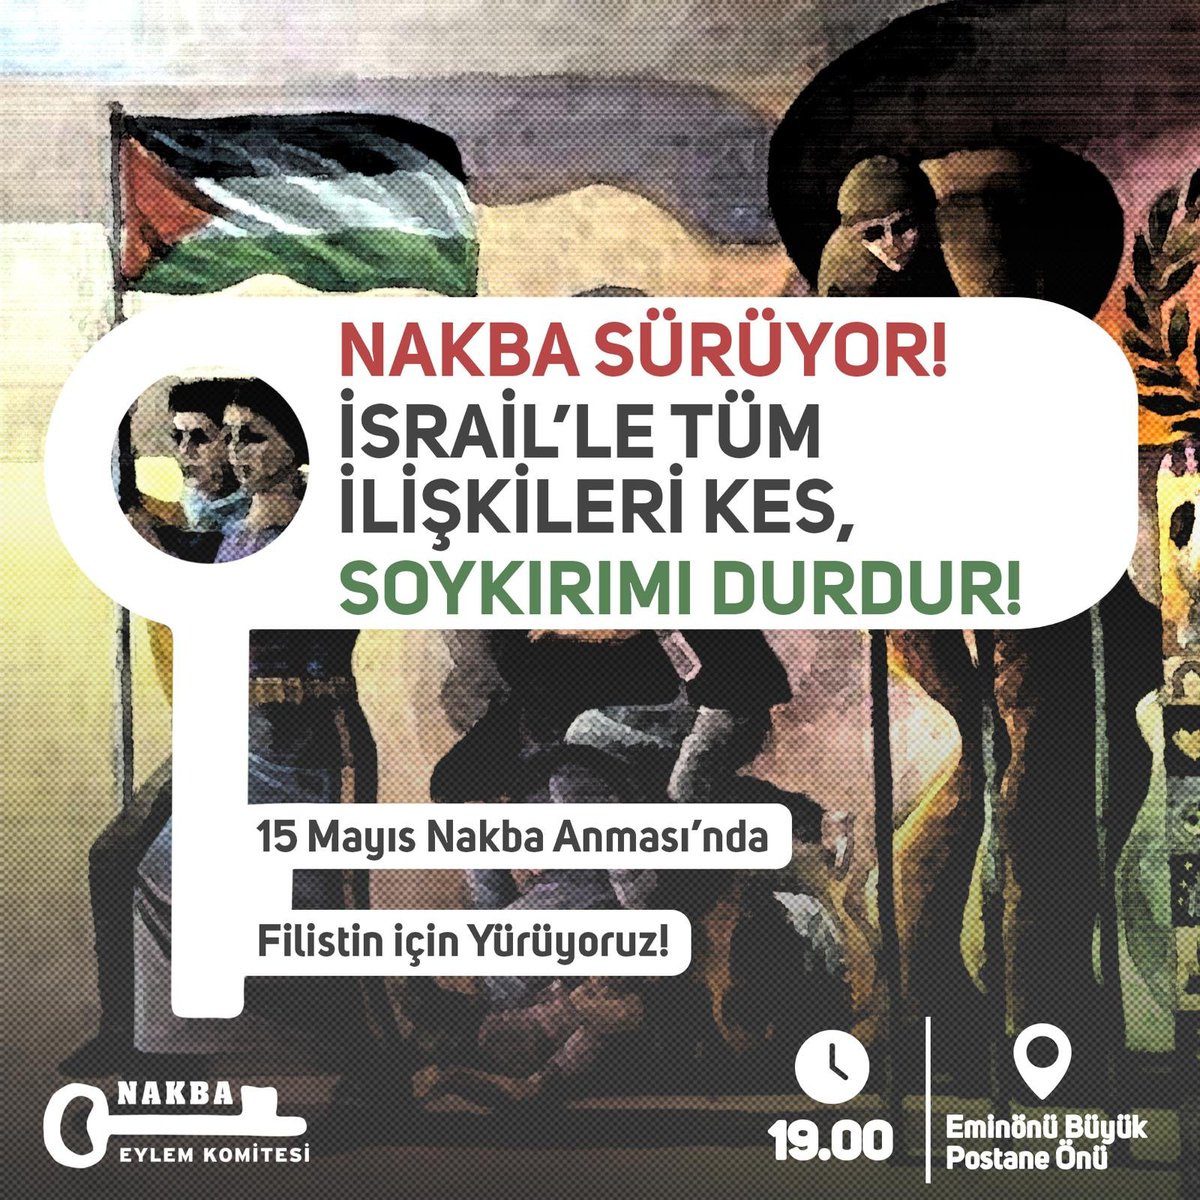 NAKBA sürüyor! 15 Mayıs Çarşamba günü Nakba'nın yıl dönümünde Filistin için yürüyoruz. 🗓 15 Mayıs Çarşamba 🕖19:00 📍Eminönü Büyük Postane Önü